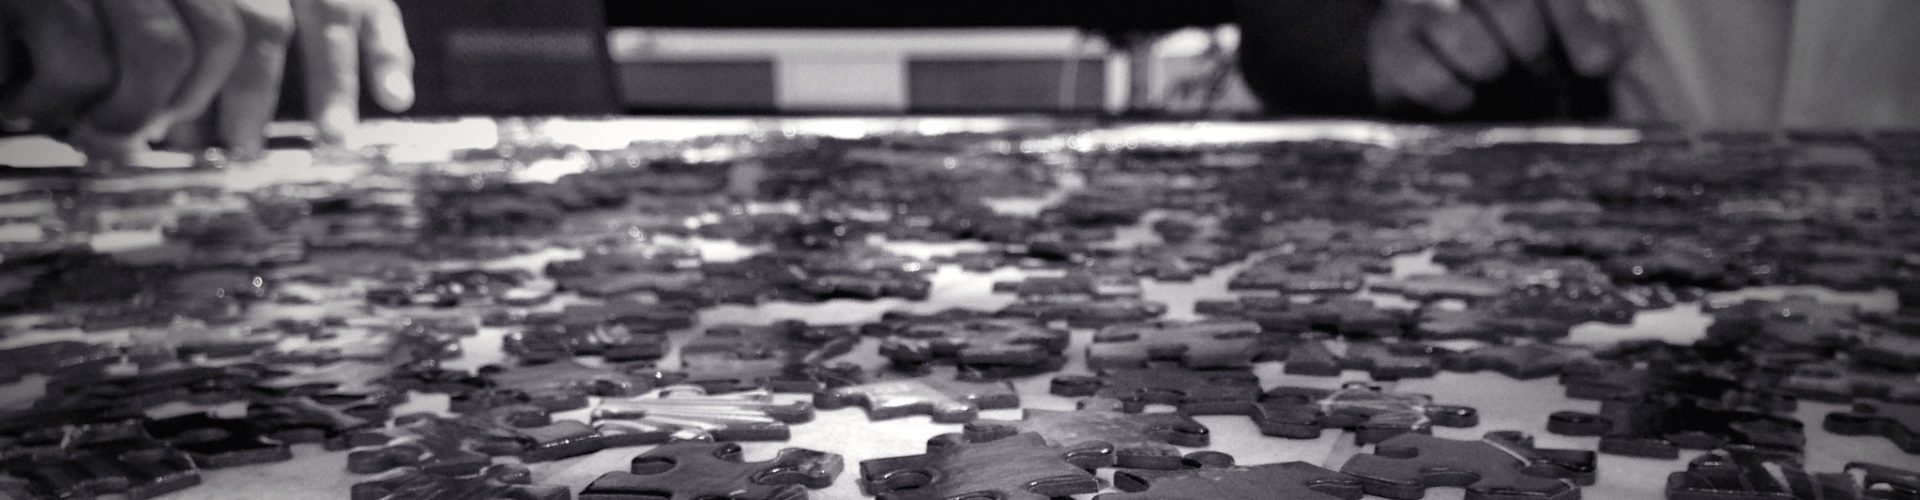 Puzzle, galerie Flickr de Kevin Dooley